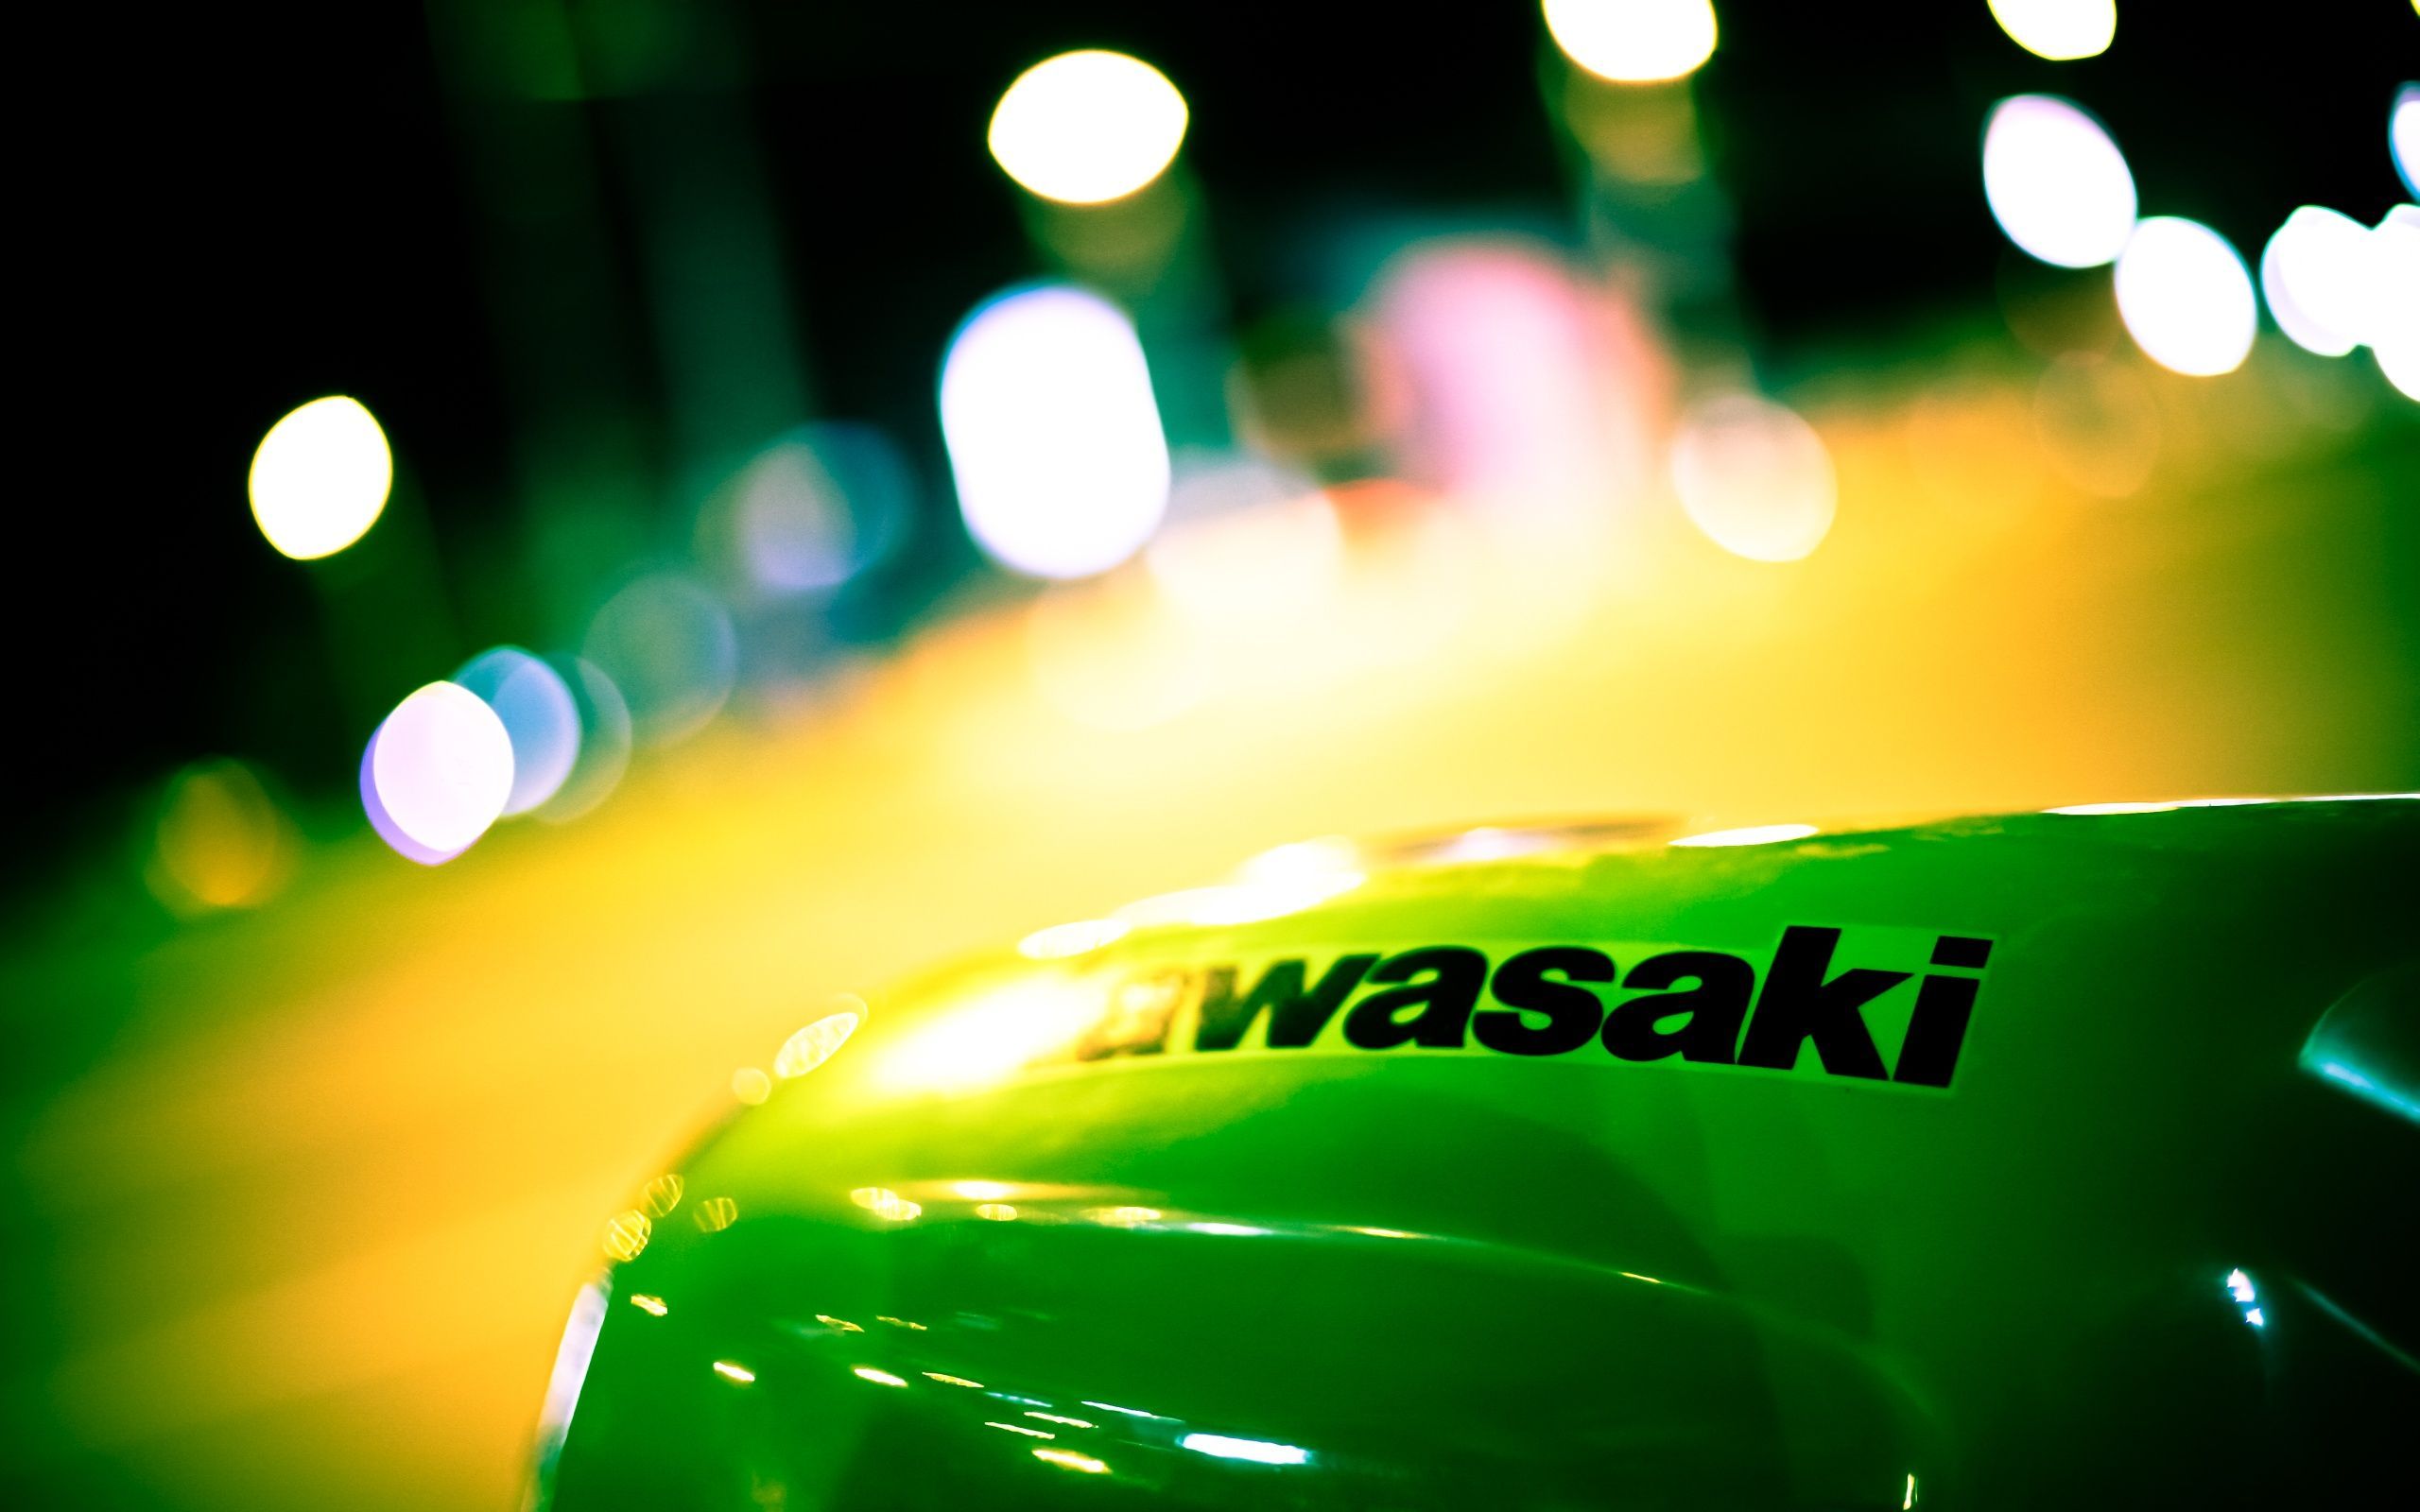 Kawasaki Logo Wallpaper. Kawasaki, Motorcycle wallpaper